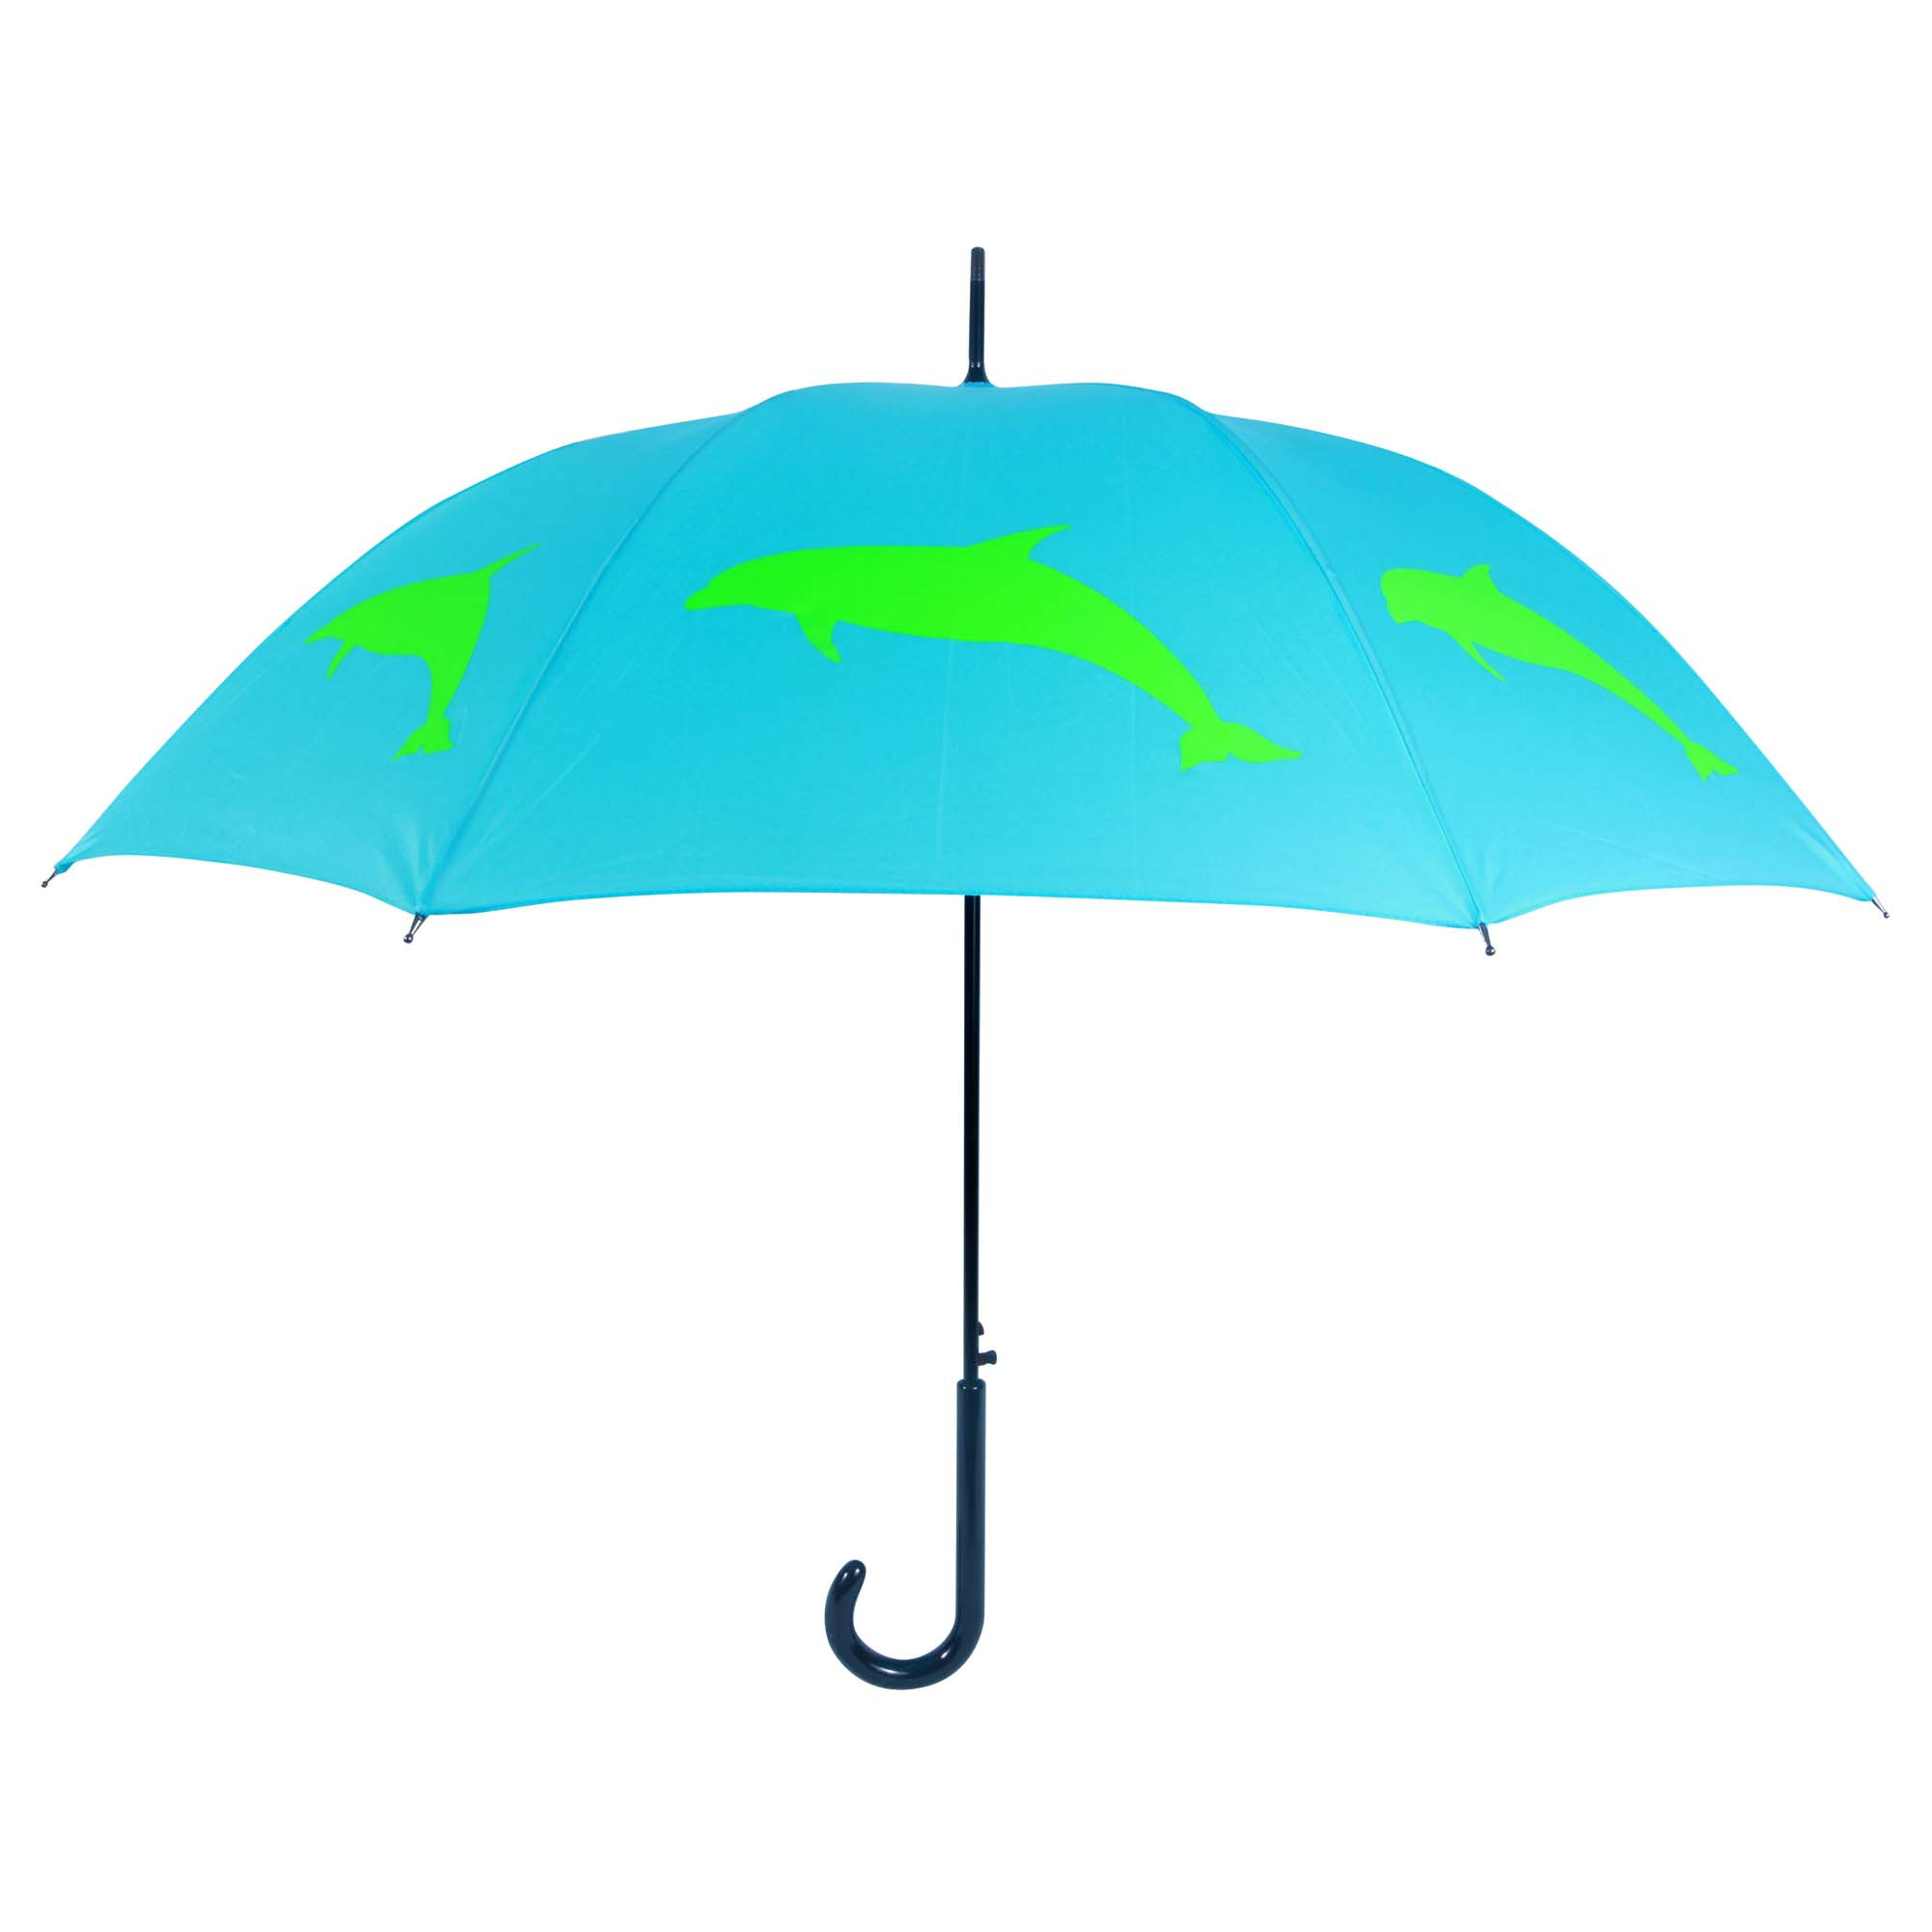 green umbrella clip art - photo #47